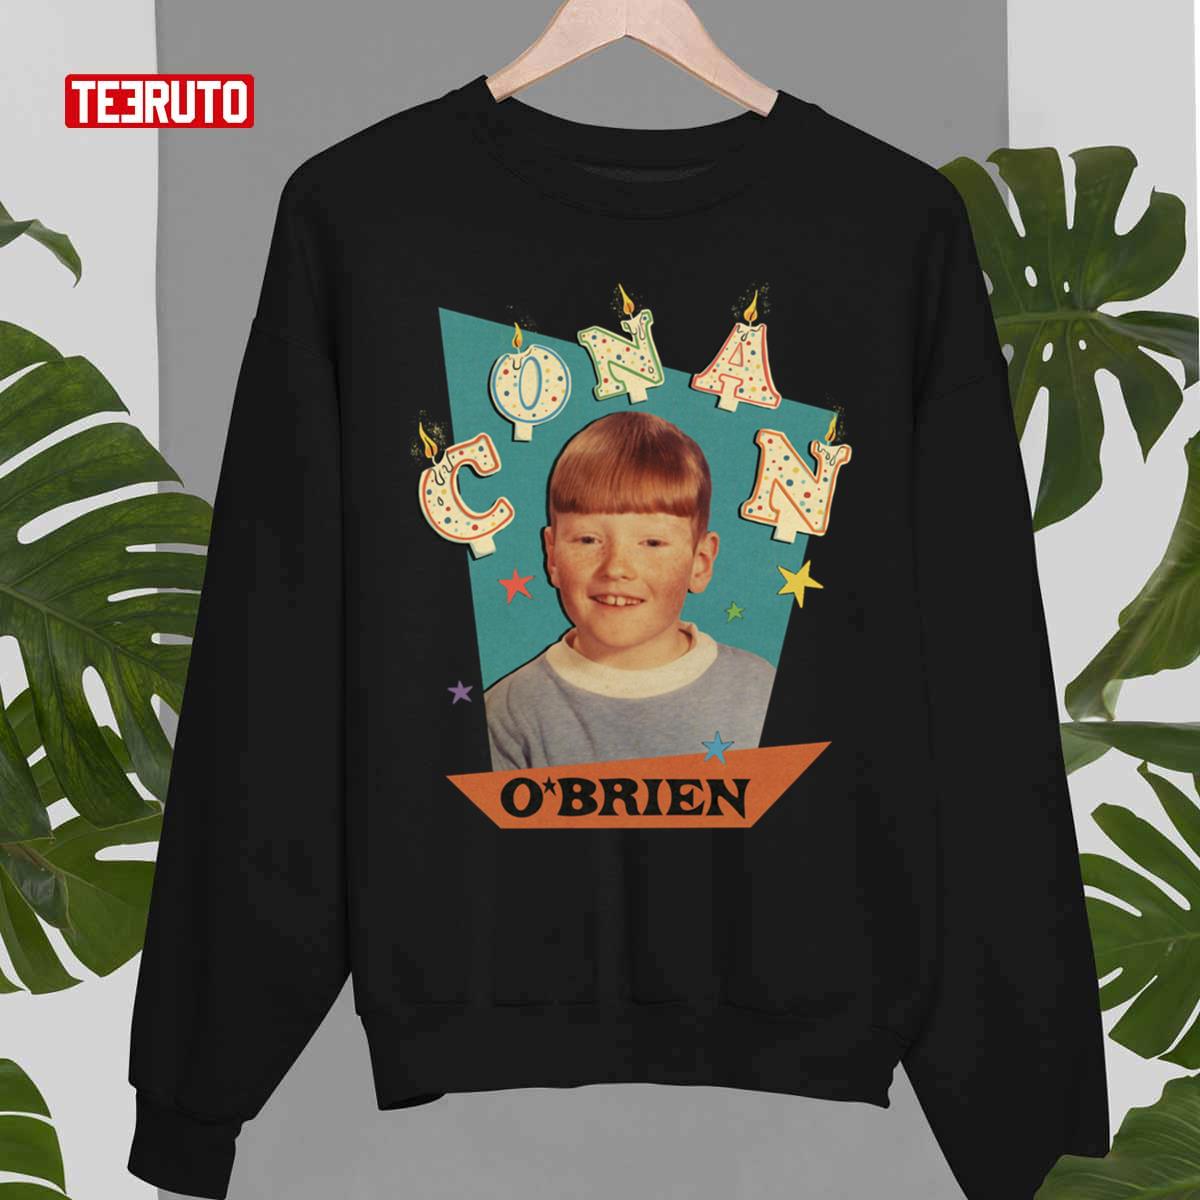 Conan O'brien Young Unisex T-Shirt